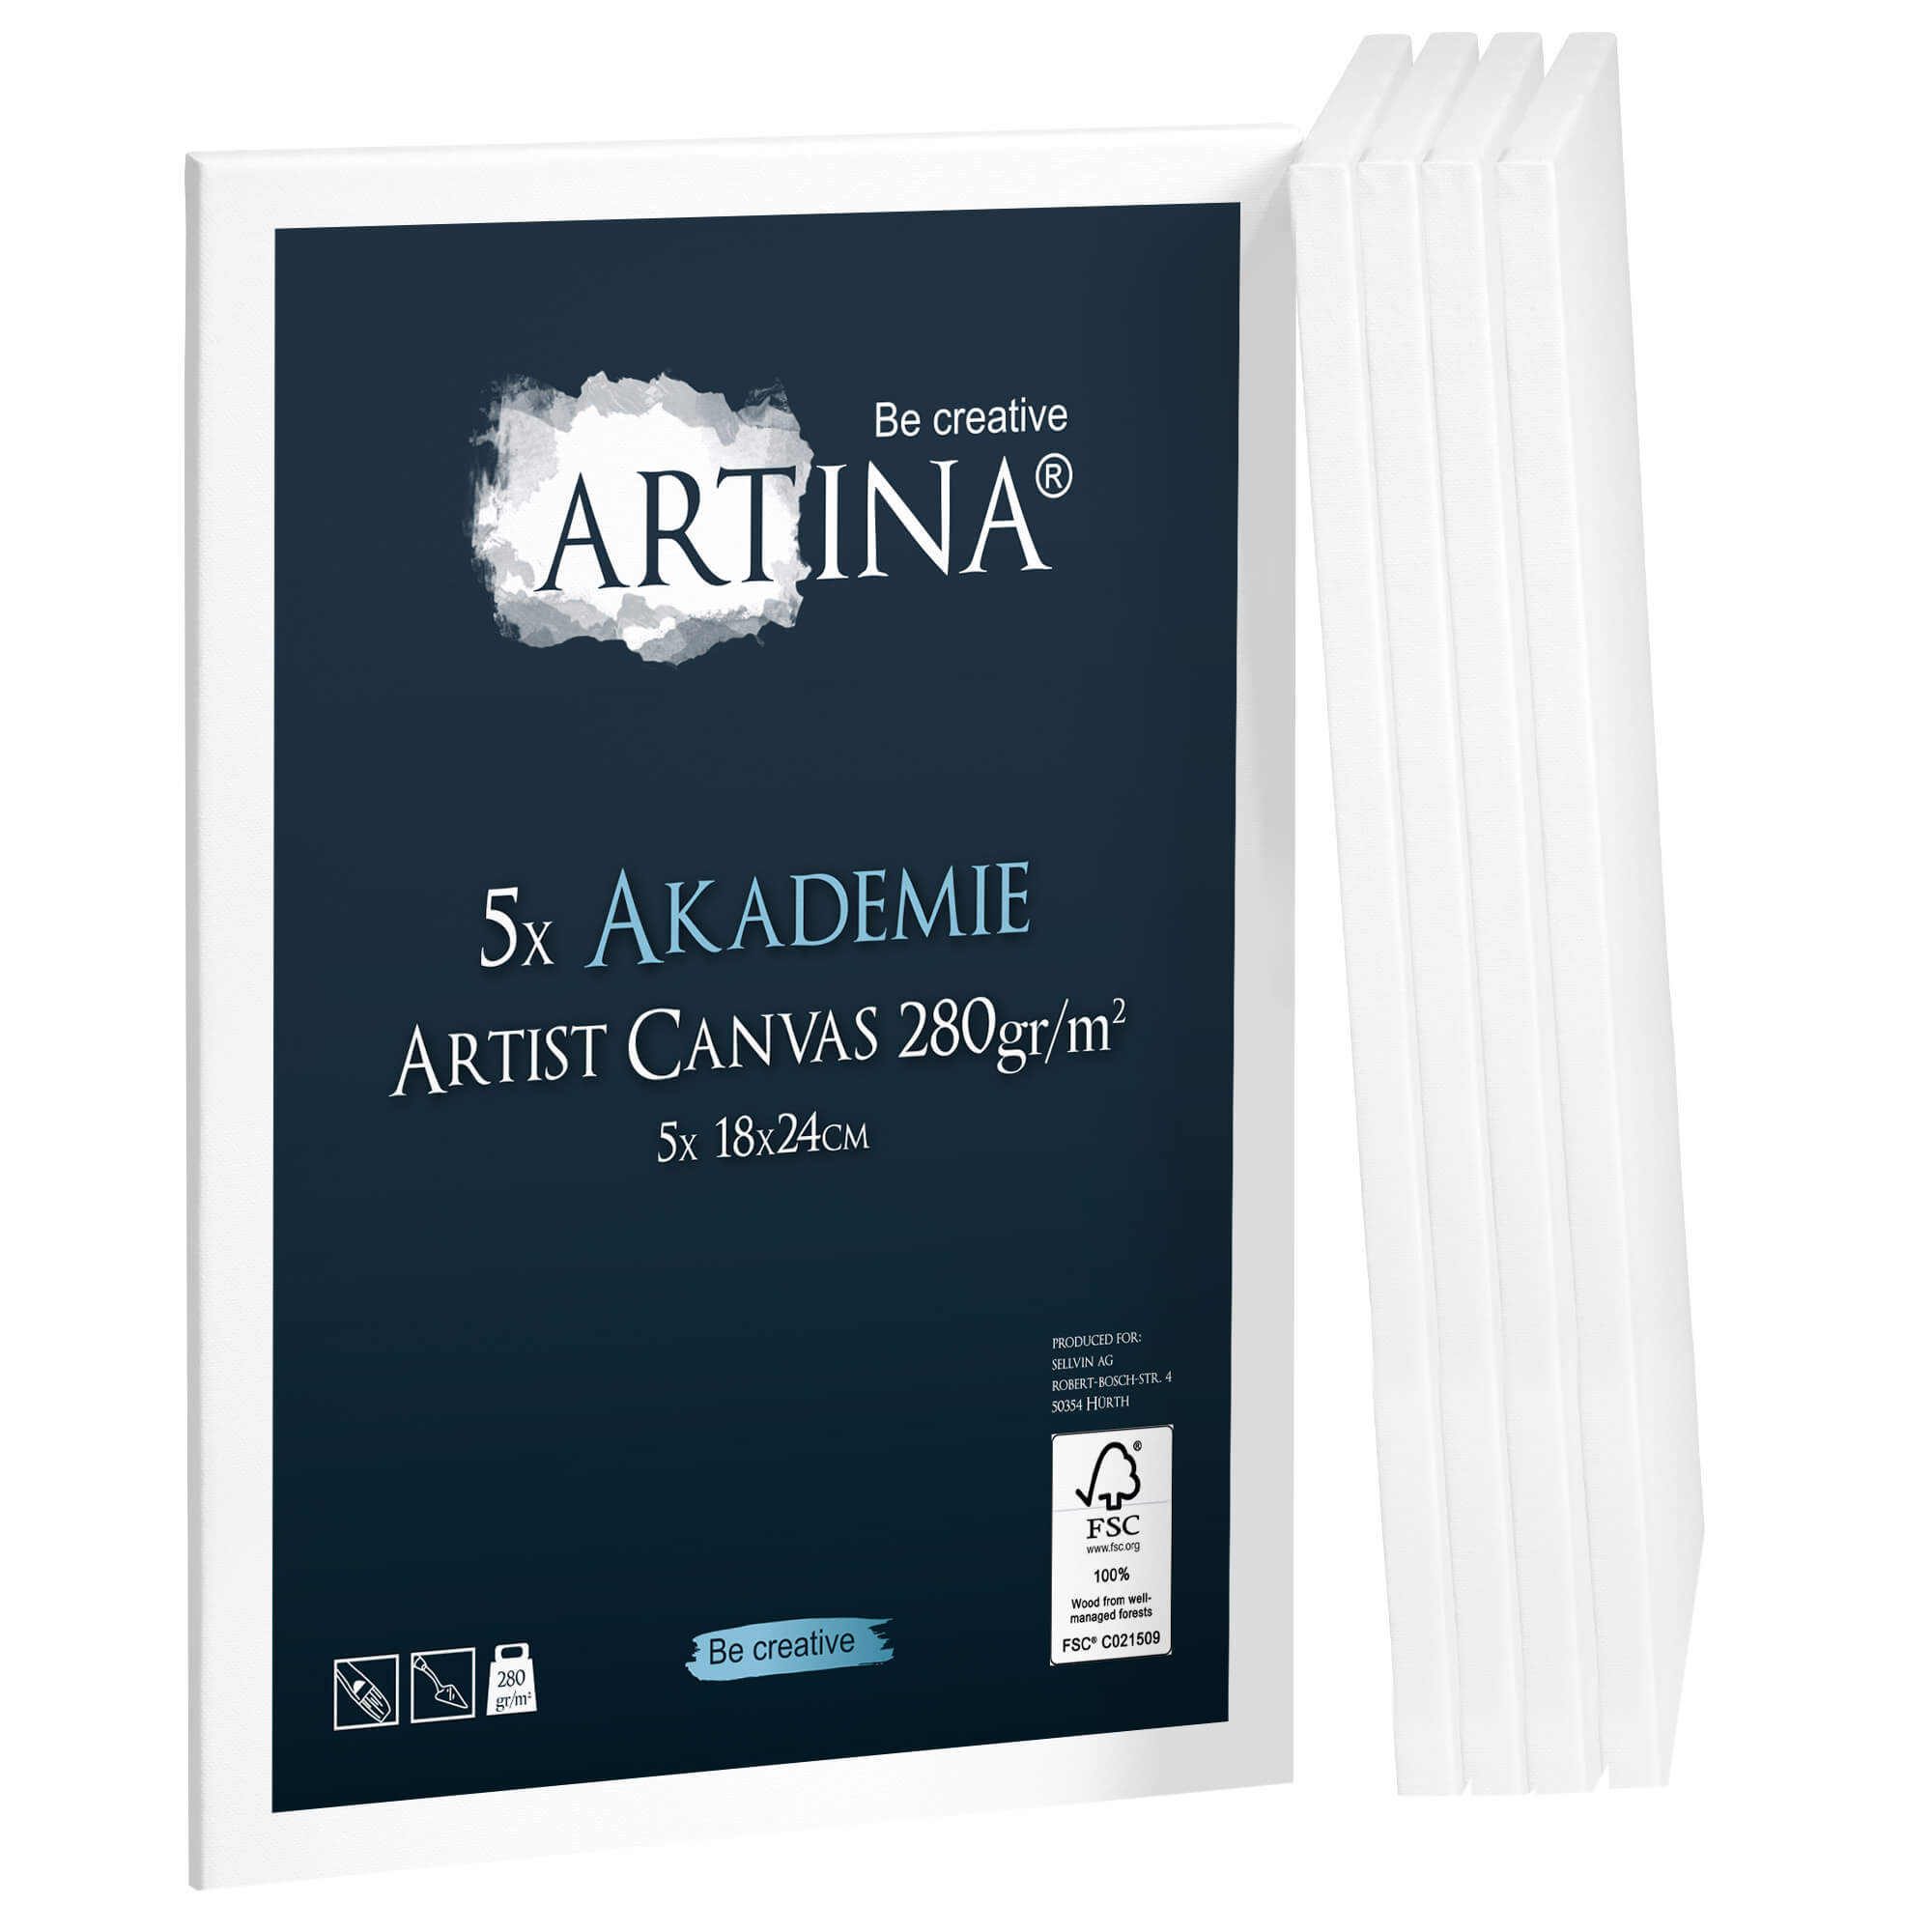 Artina Keilrahmen Set in 18x24cm in Akademie Qualität